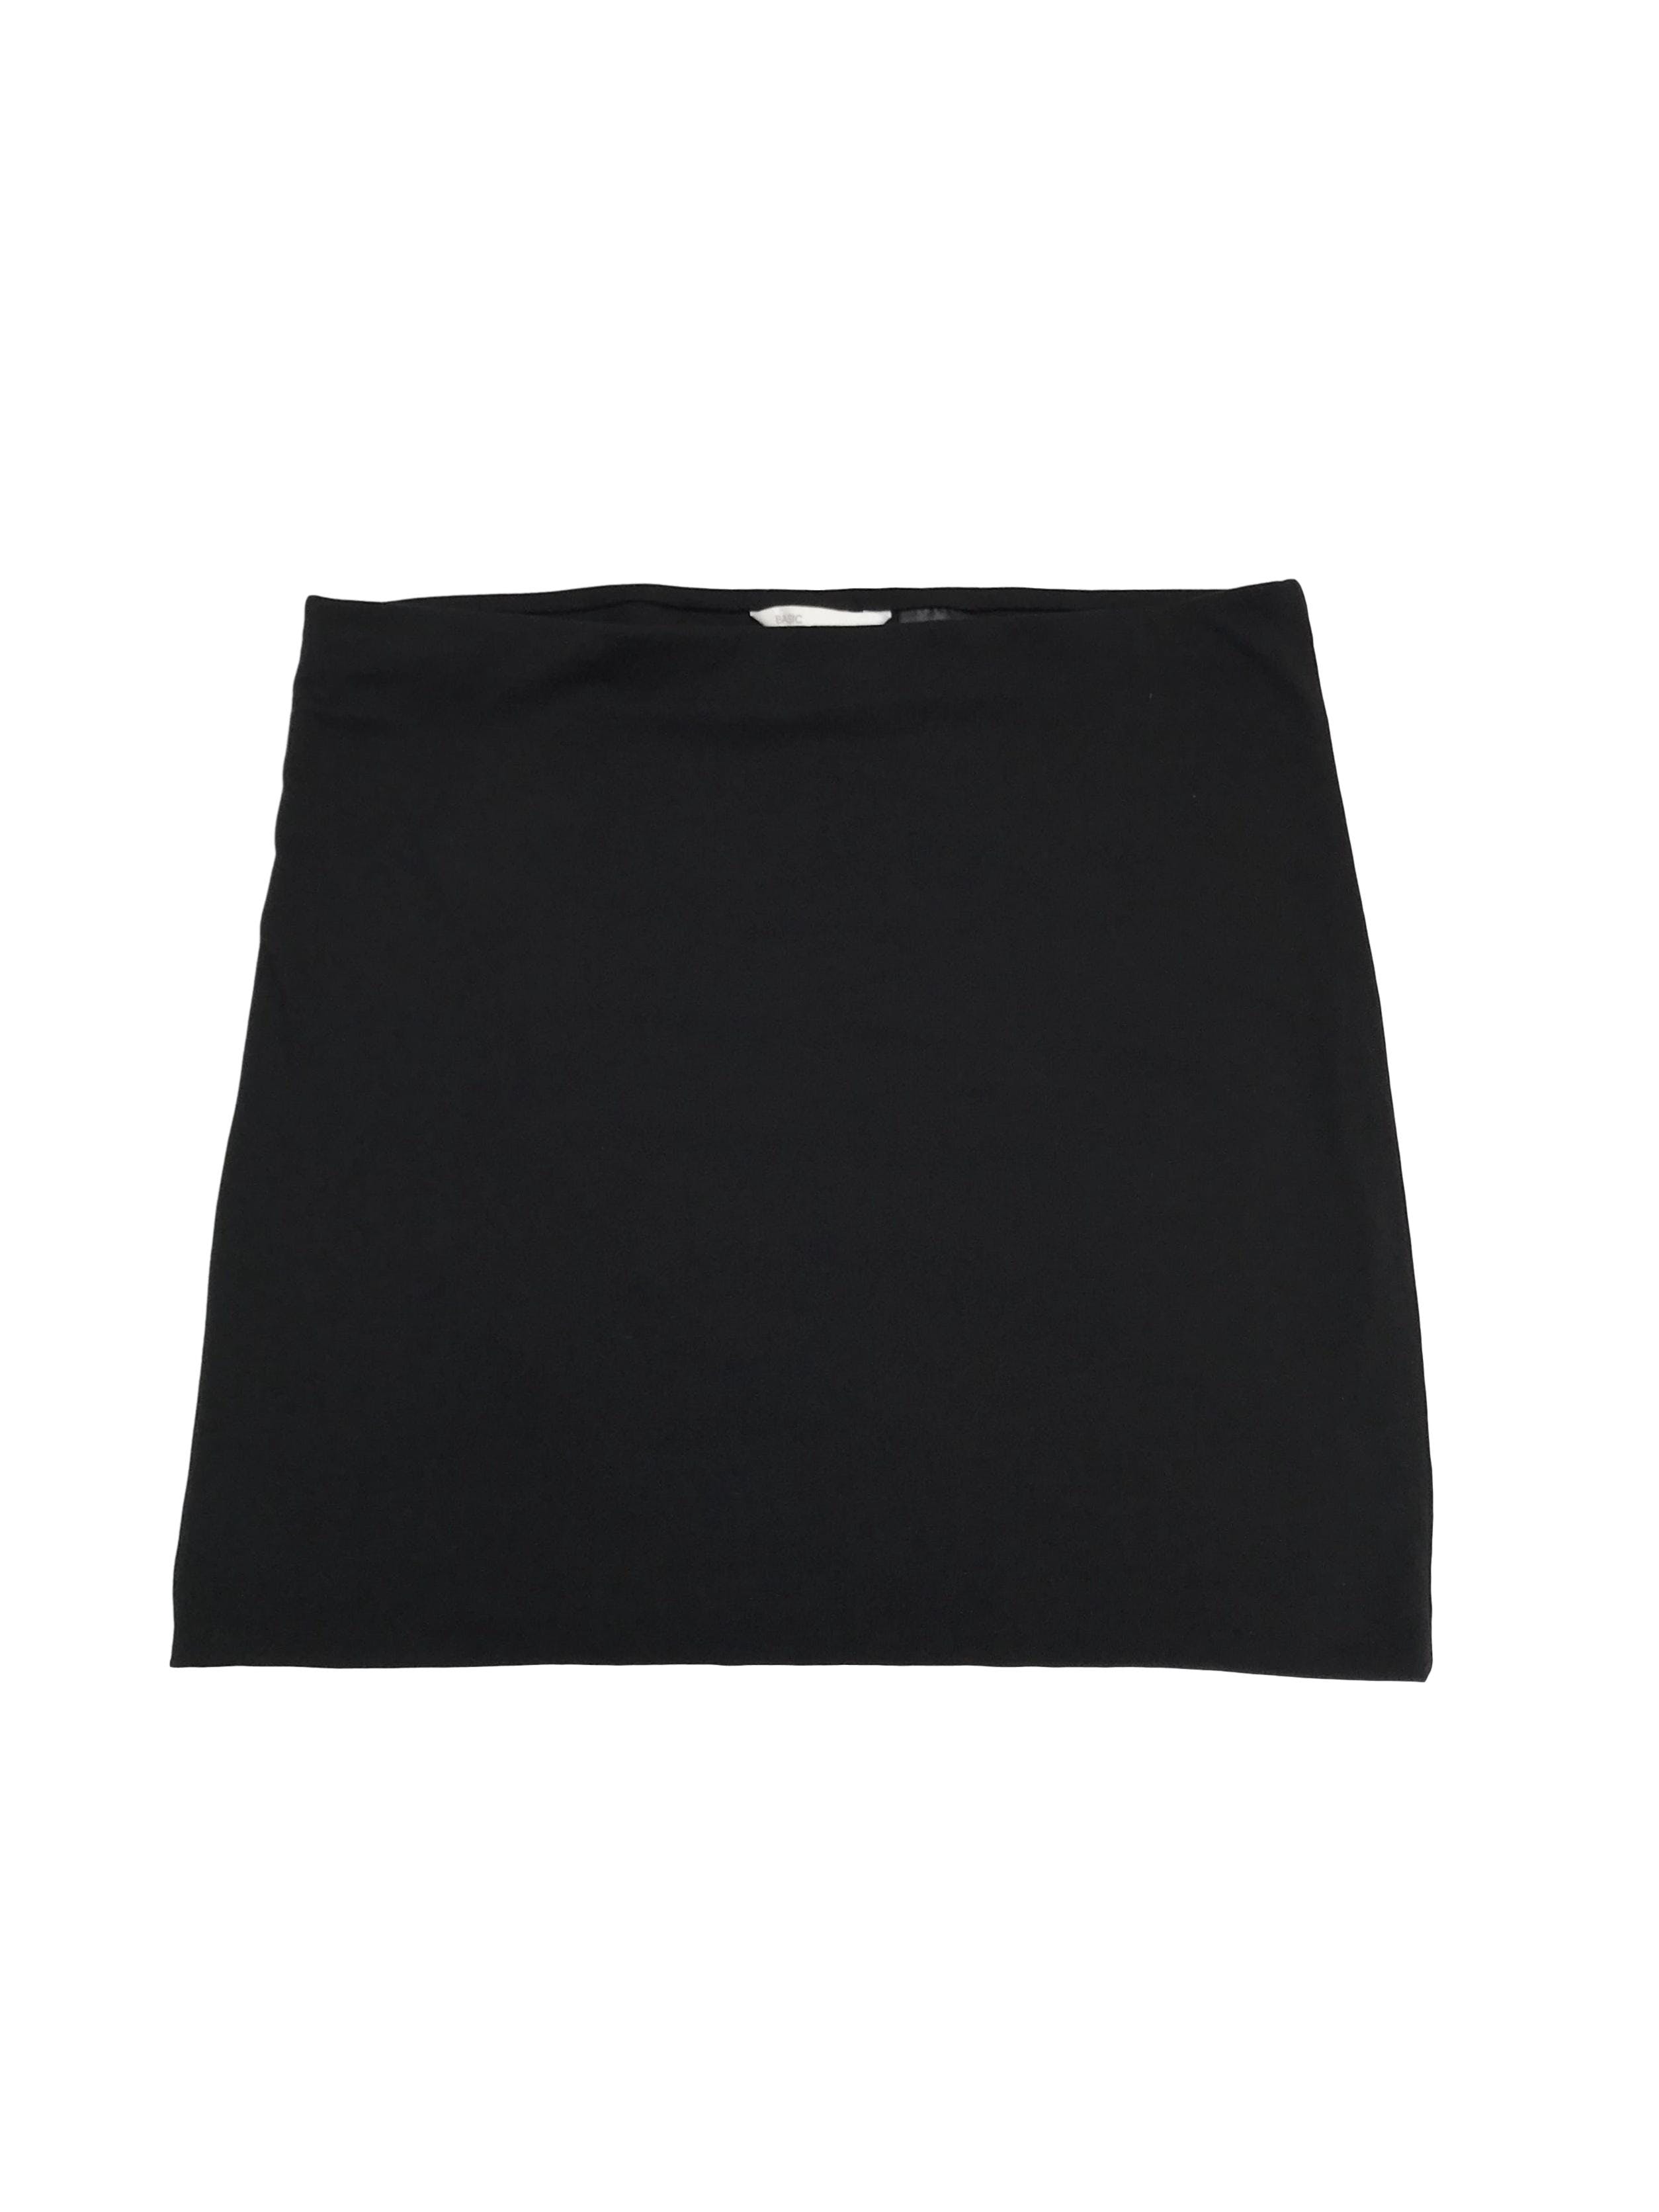 Falda H&M de algodón stretch negro, doble capa con elástico enla cintura. Largo 38cm